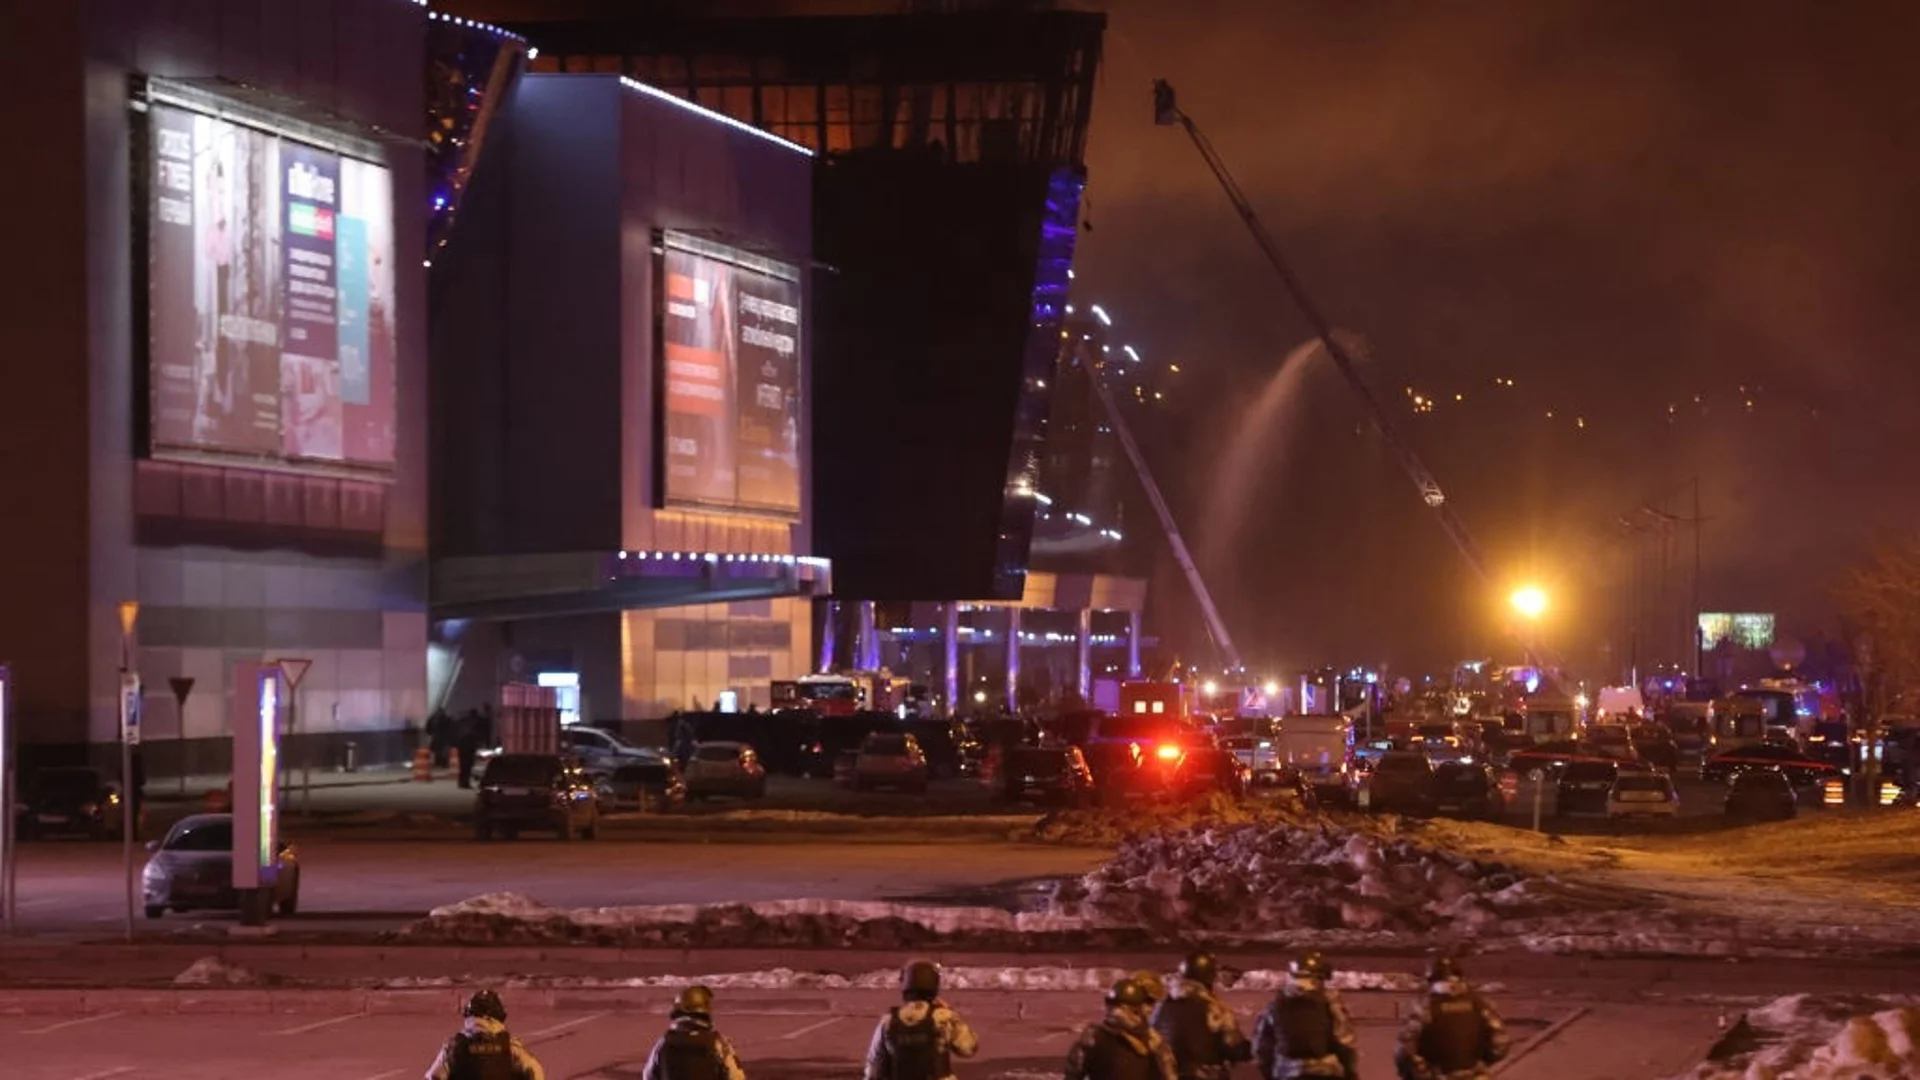 След атентата в Москва: най-разпространените митове и дезинформация